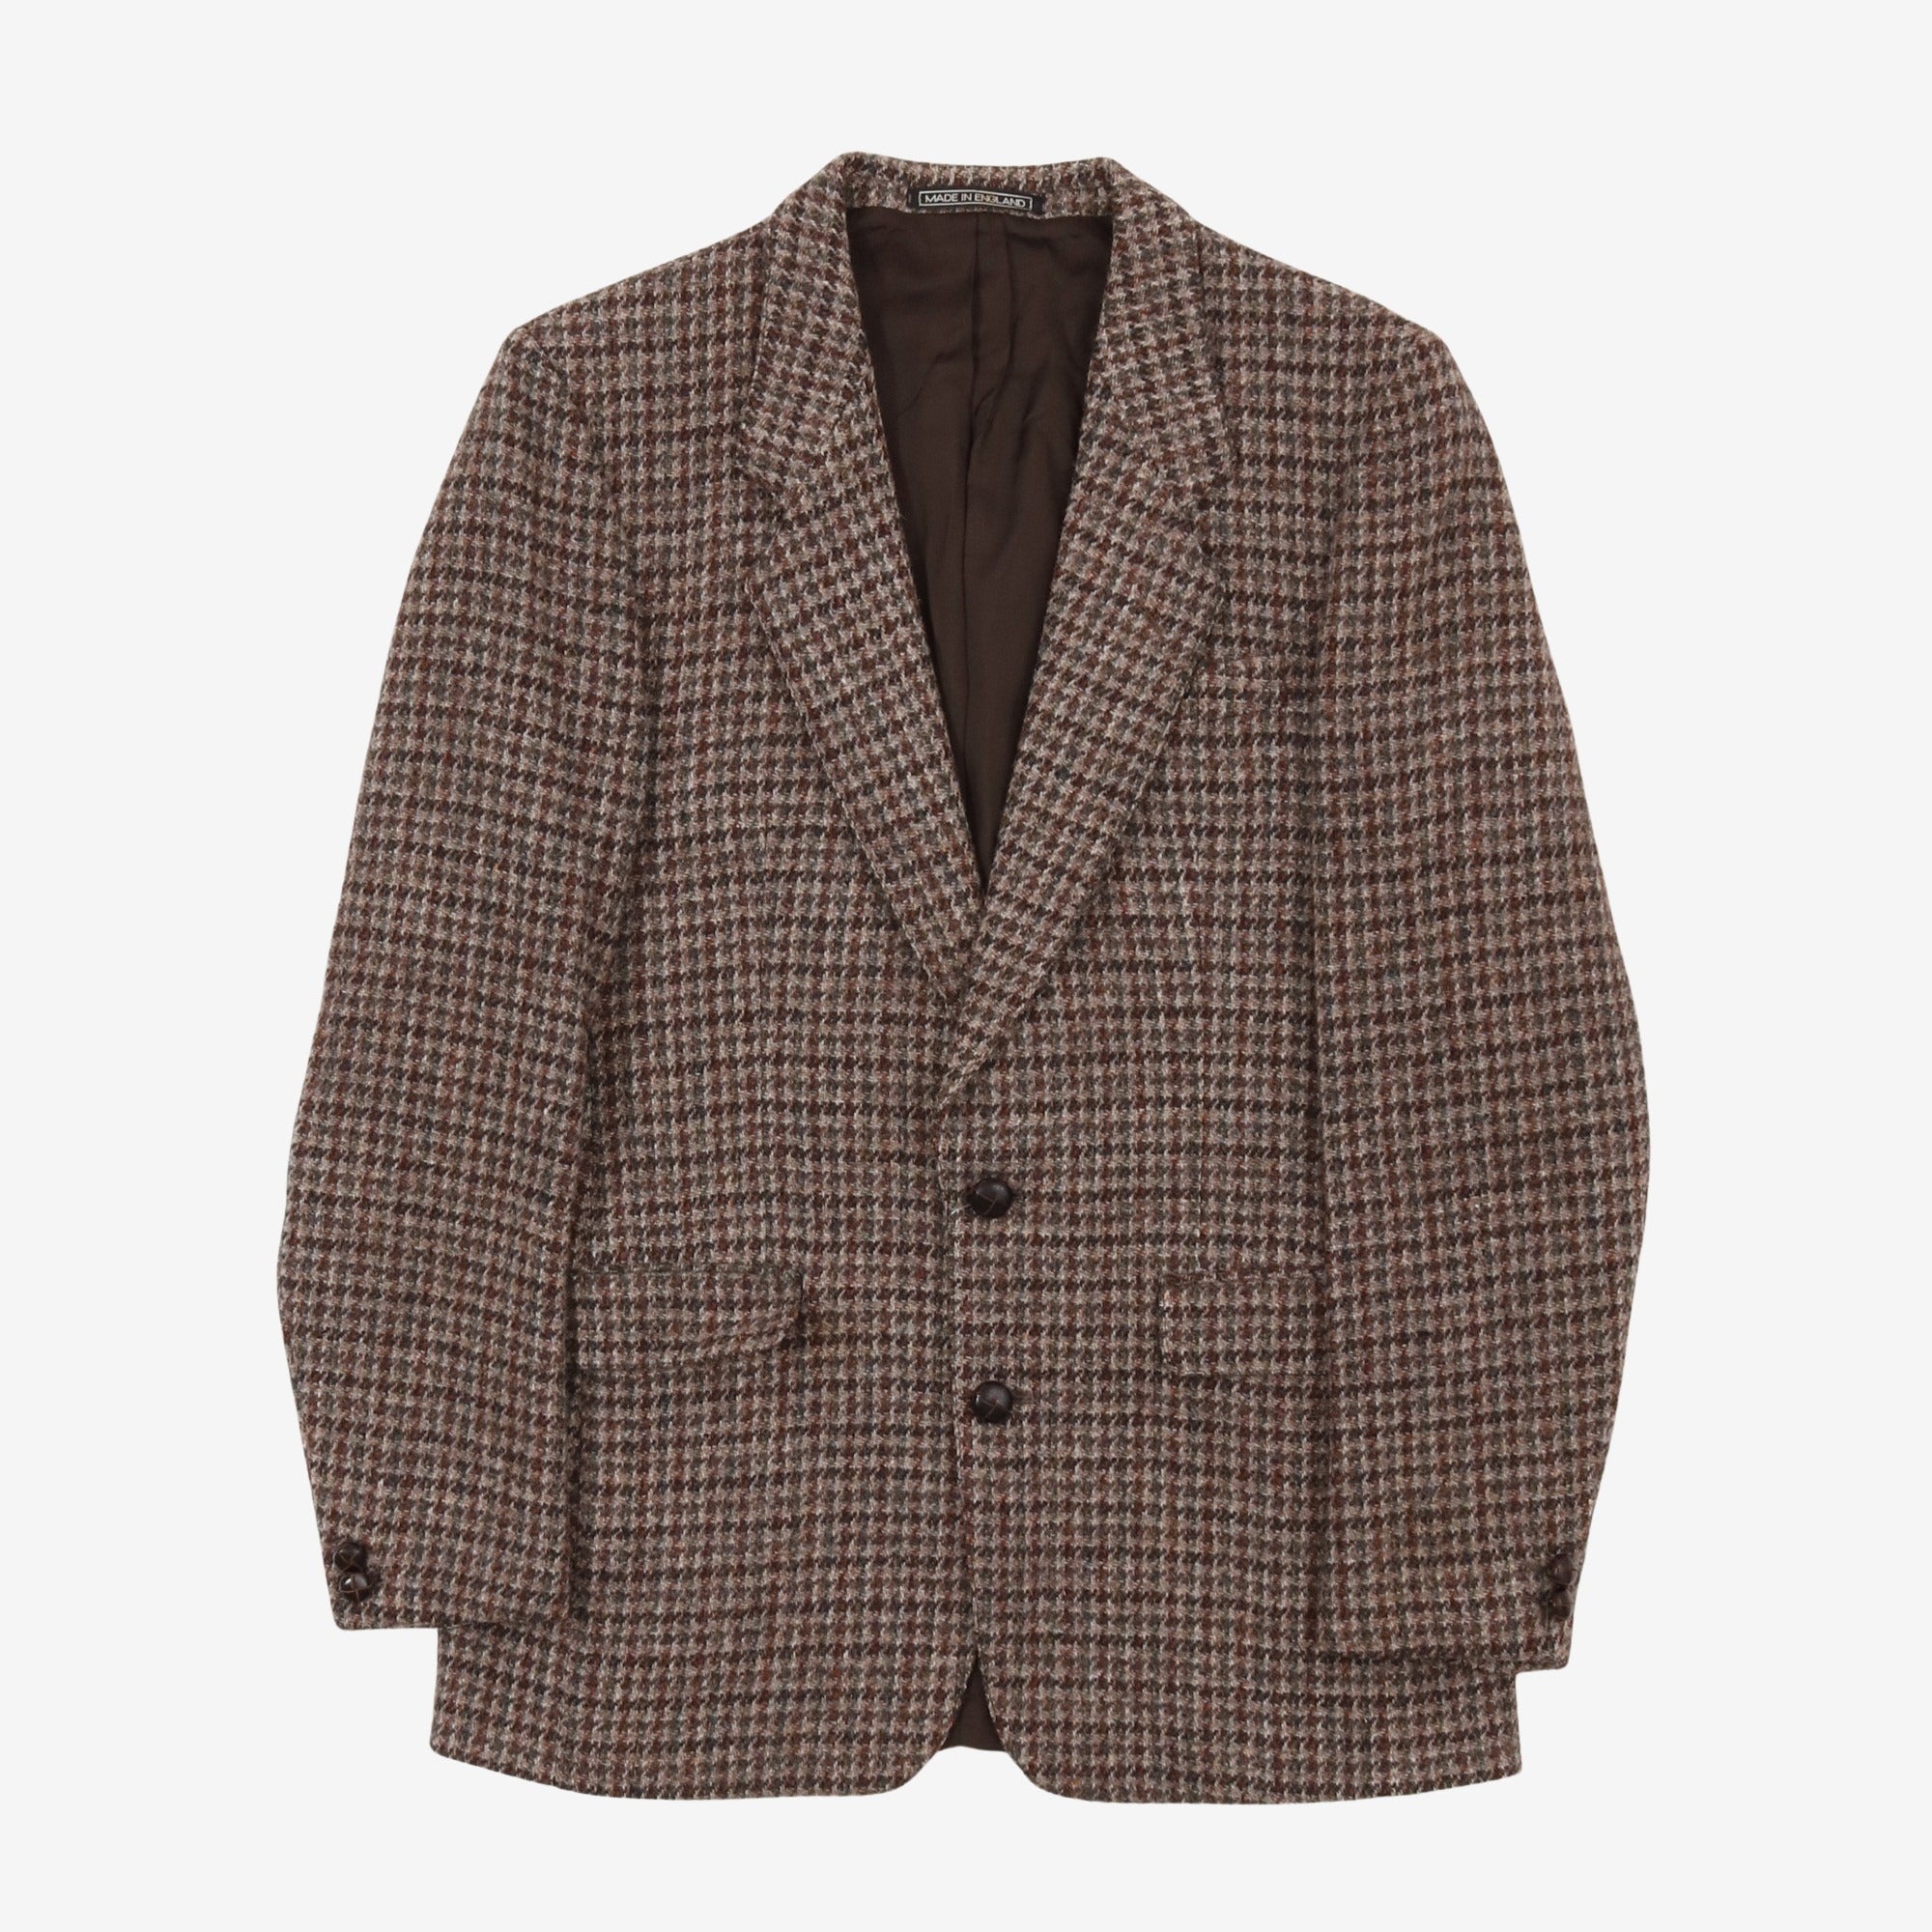 Vintage Harris Tweed Guncheck Jacket